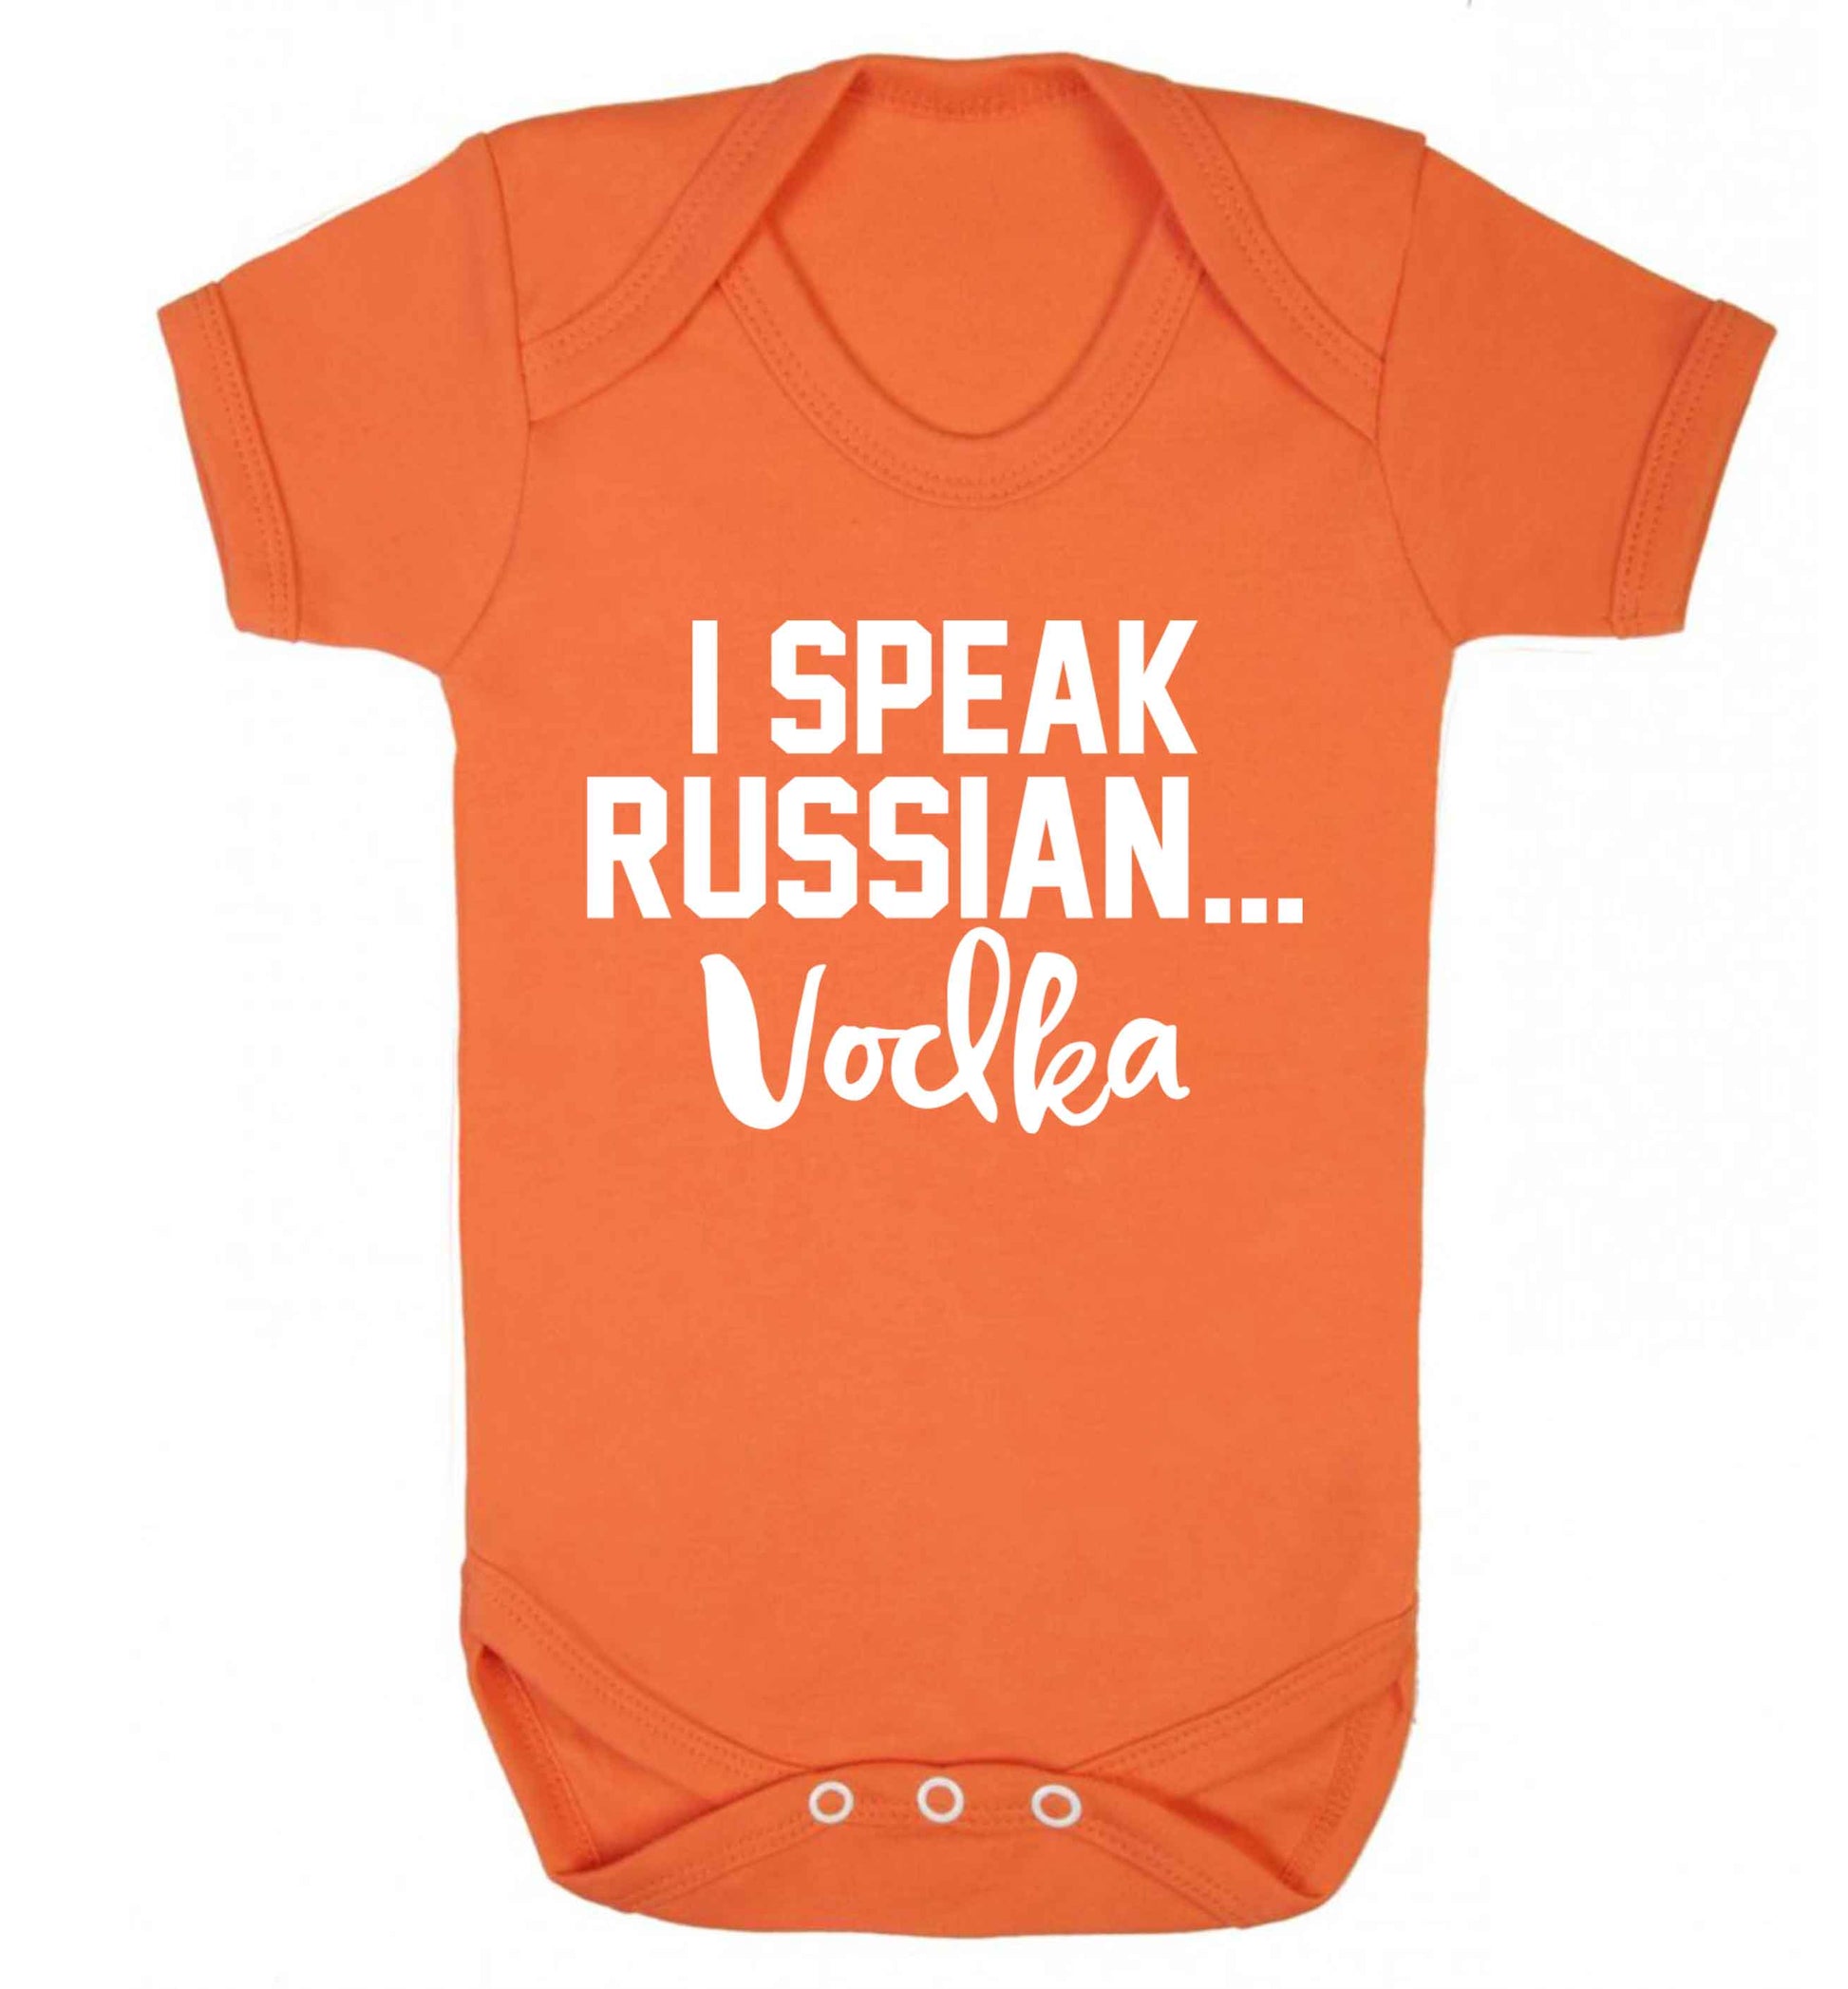 I speak russian...vodka Baby Vest orange 18-24 months